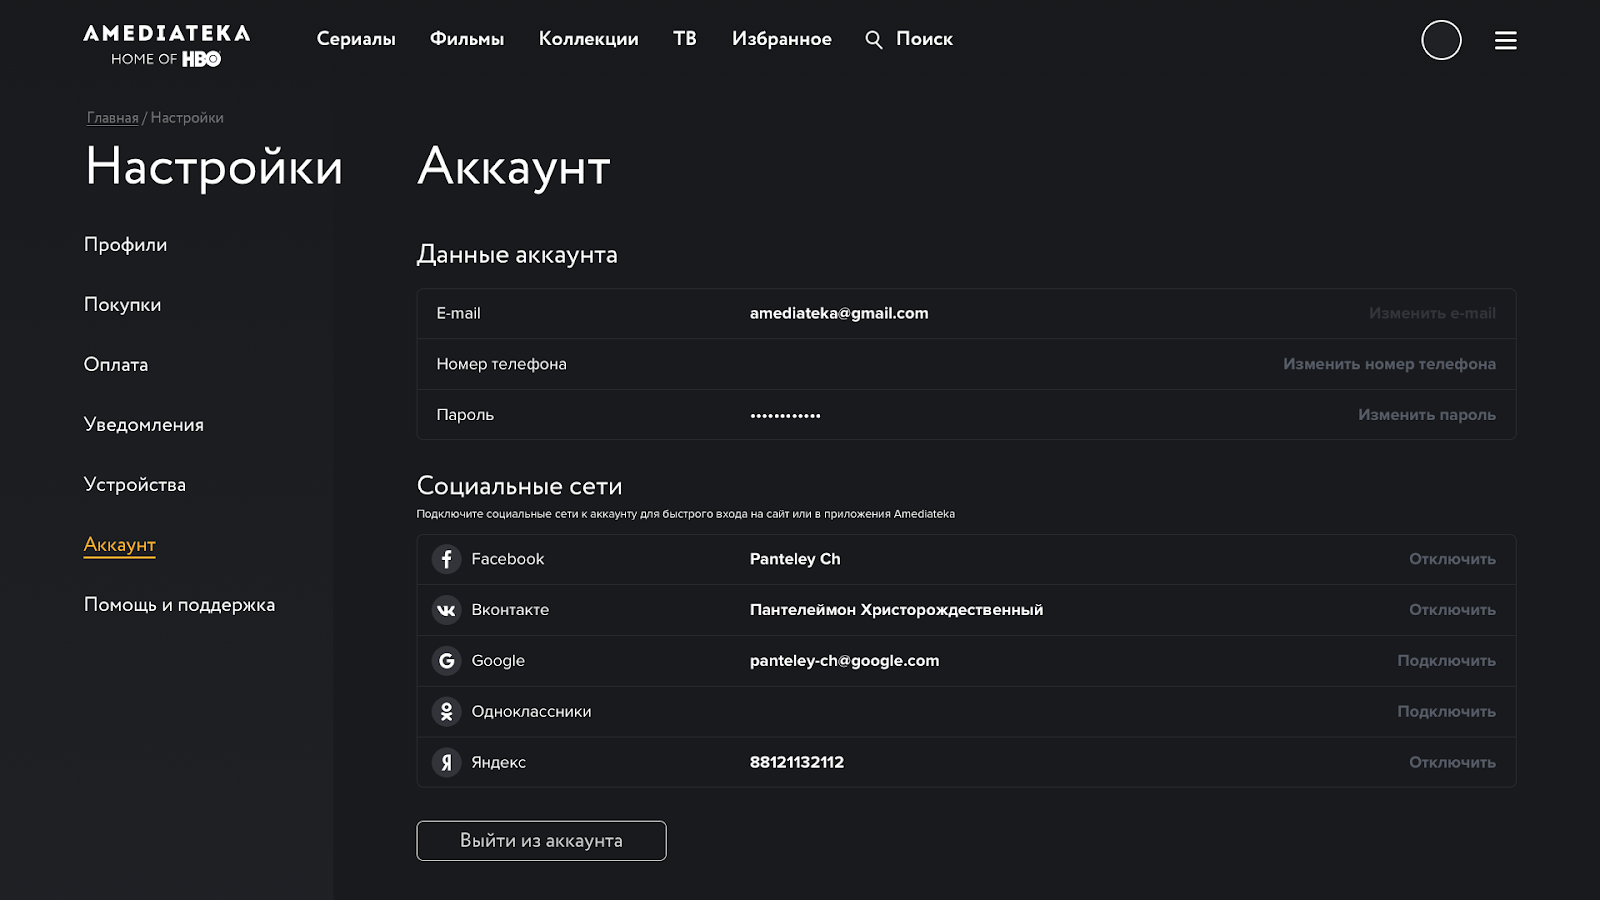 Amediateka.ru не работает сегодня февраль 2022? это только у меня проблемы с amediateka.ru или это сбой сайта?